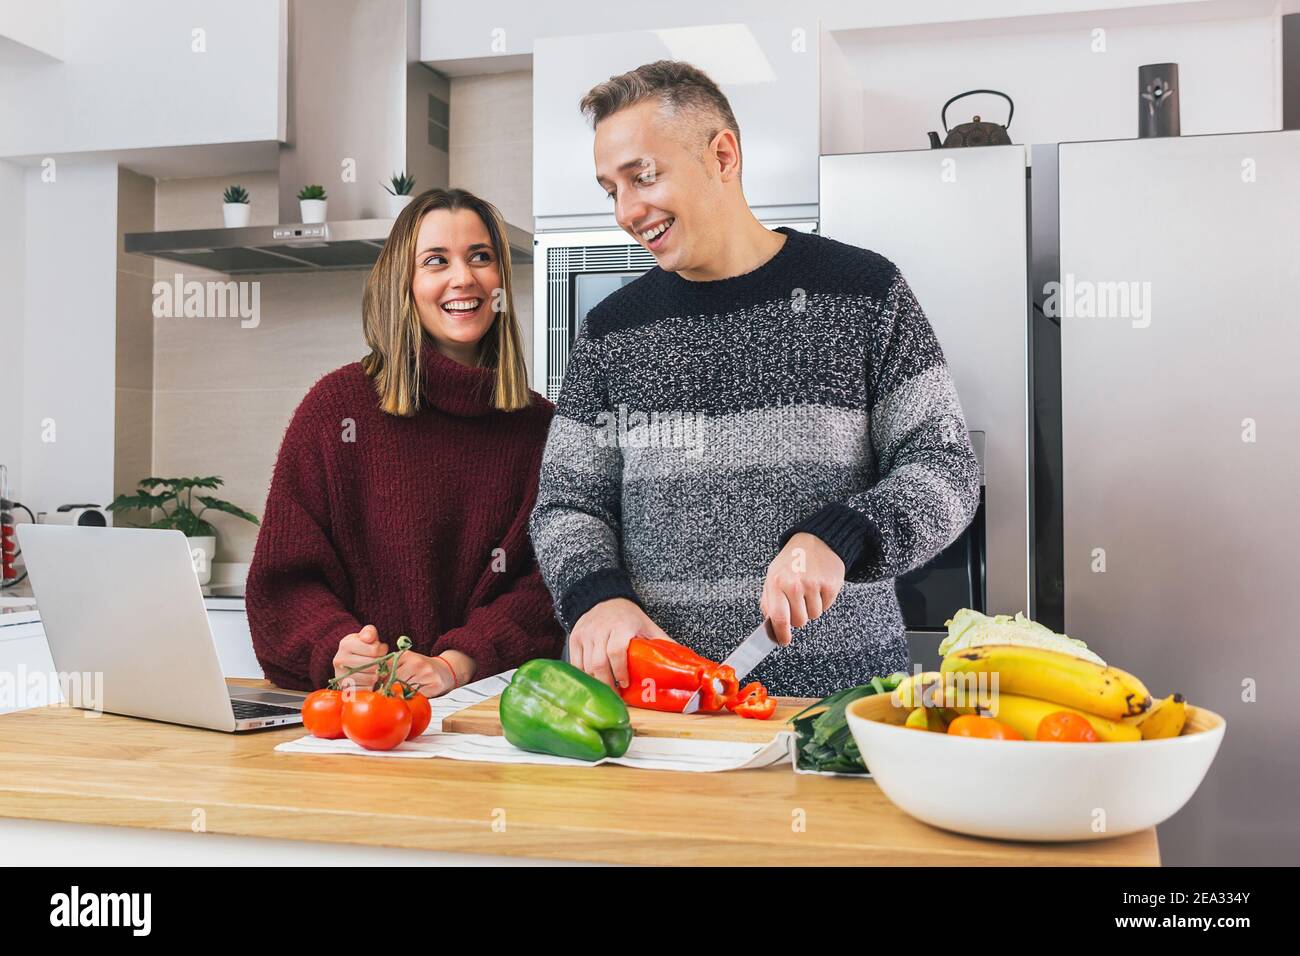 Stock Foto von einem jungen glücklichen Paar lachen und gesunde Lebensmittel in ihrer Küche vorbereiten und Rezepte auf dem Notizbuch lesen. Lernen Koch und enjoyi Stockfoto